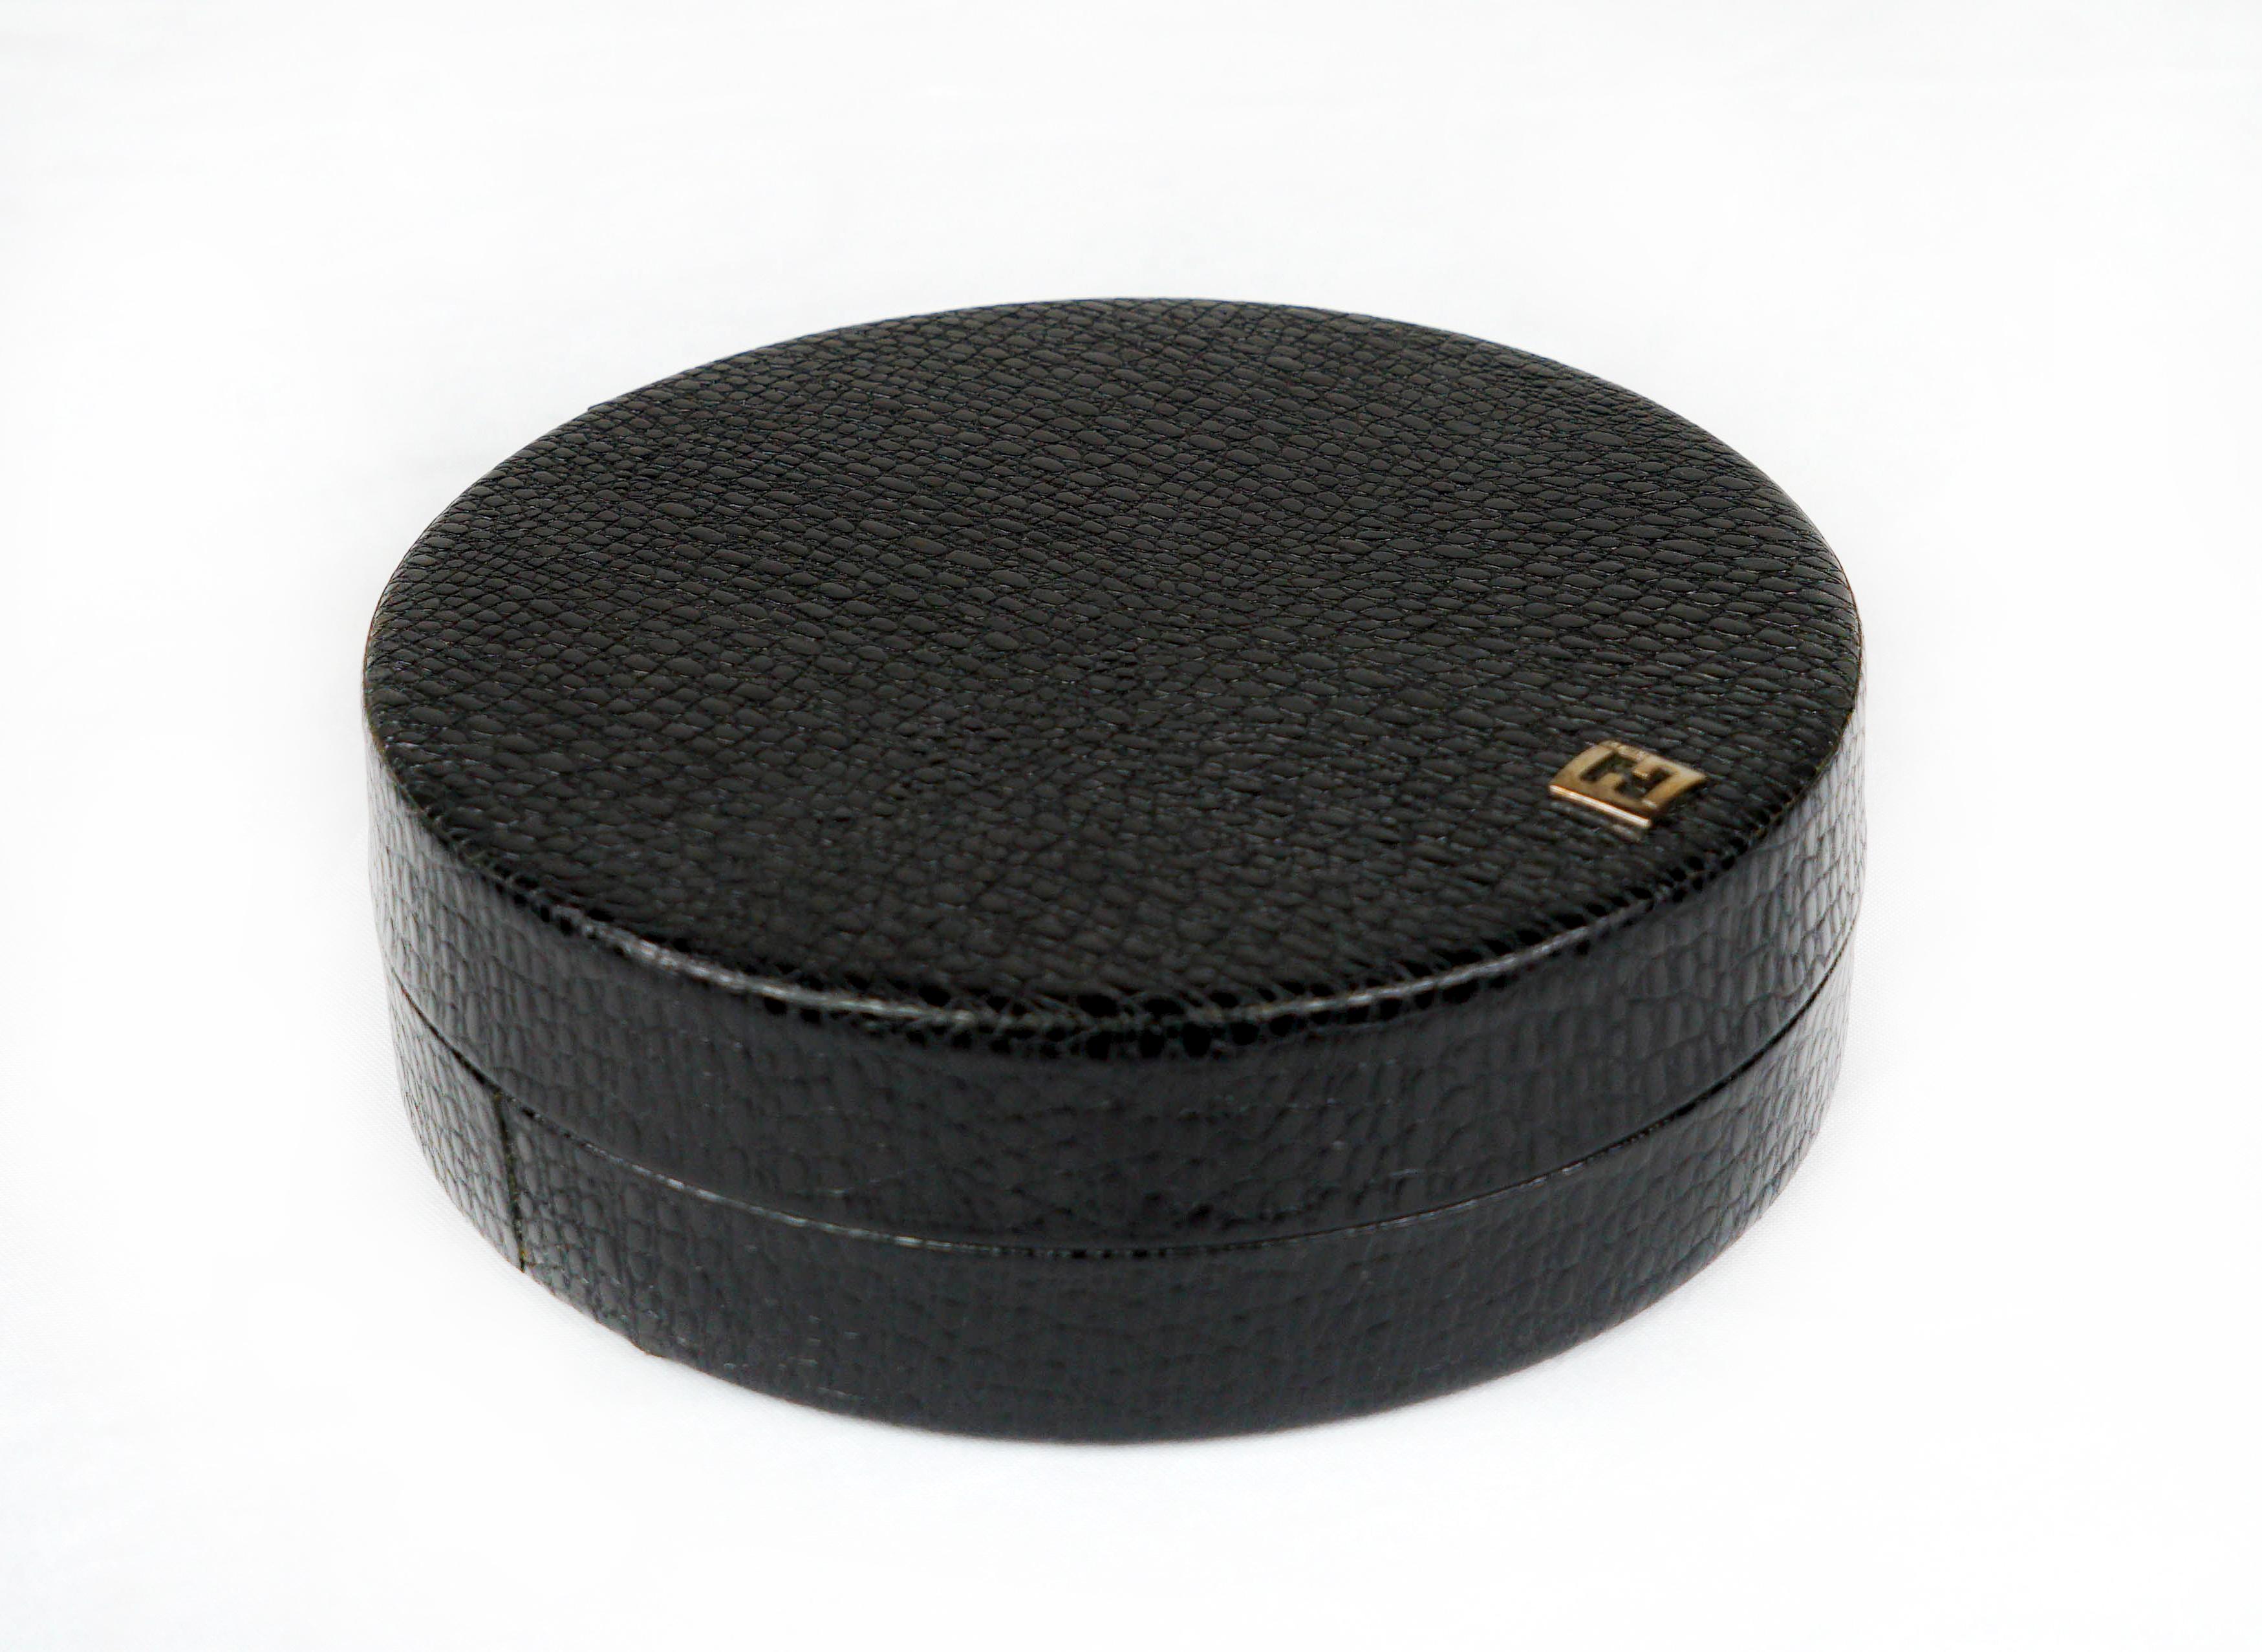 Eine elegante Schachtel aus Metall, bezogen mit schwarzem Leder mit Krokodilprägung und ausgekleidet mit schwarzer Mikrofaser. Das Oberteil ist mit dem klassischen Fendi FF Logo aus Metall verziert.
  